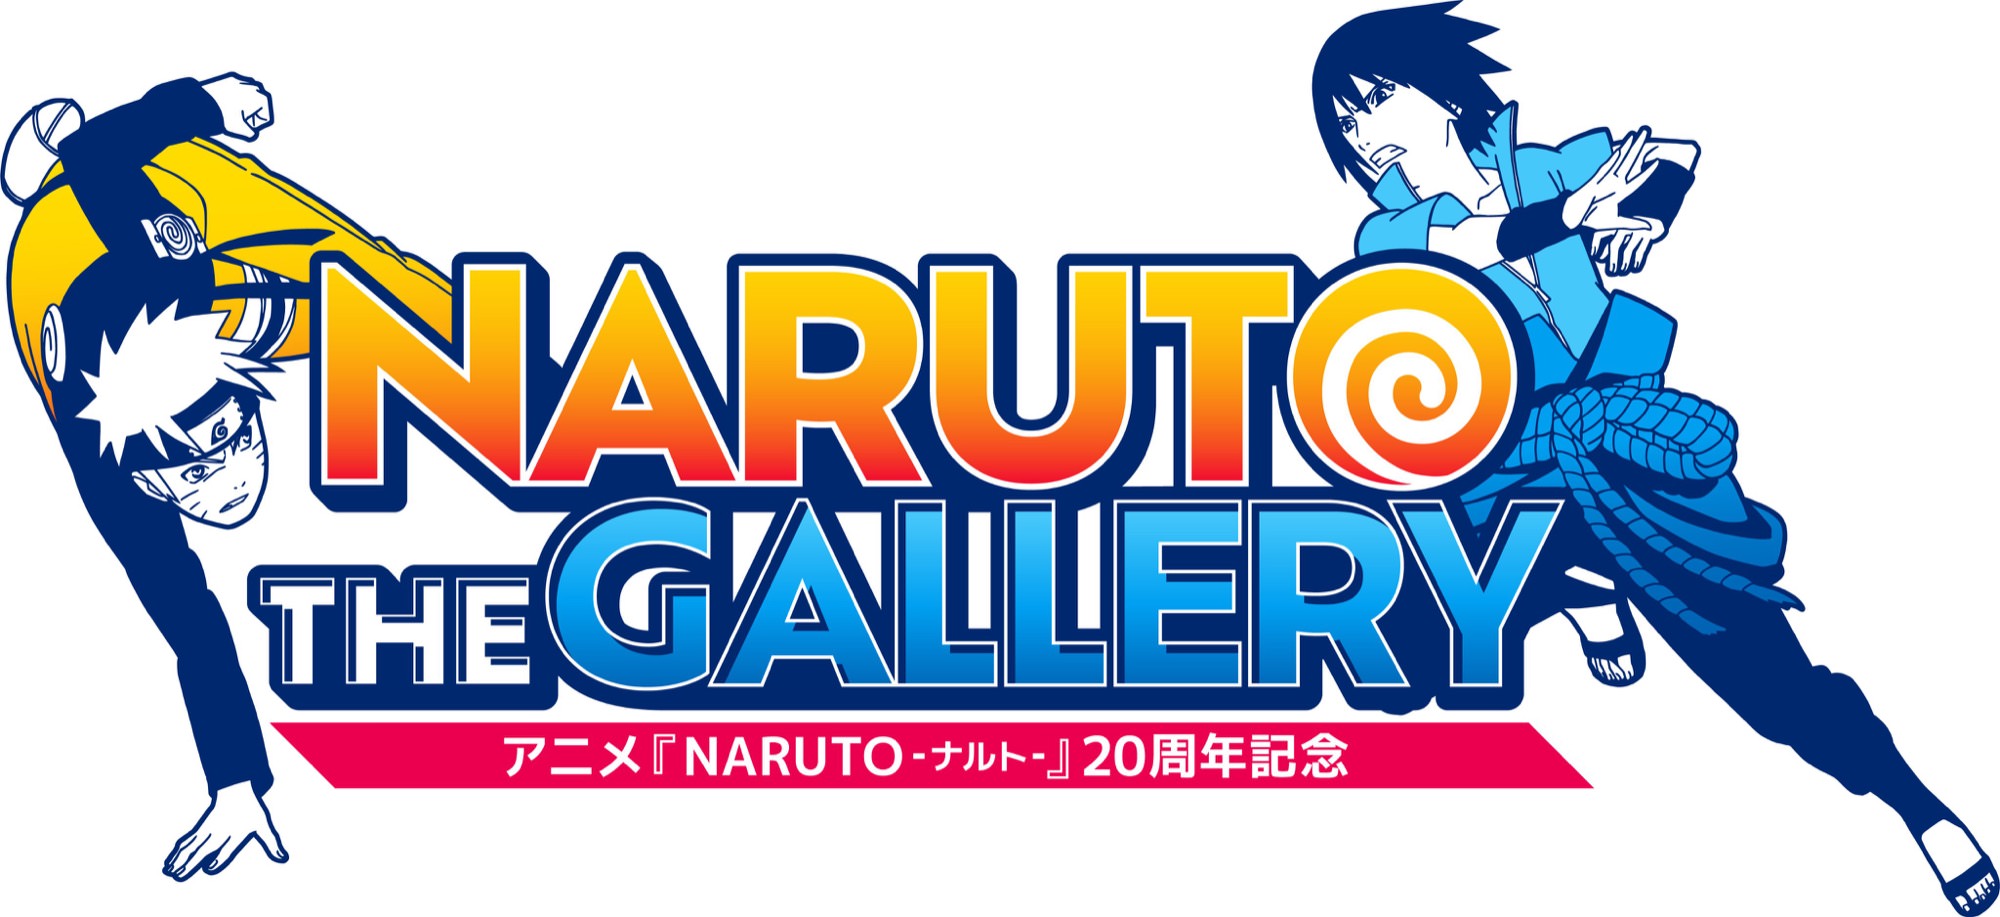 ナルト 20周年記念展 “NARUTO THE GALLERY” in 秋葉原 12月10日開催!